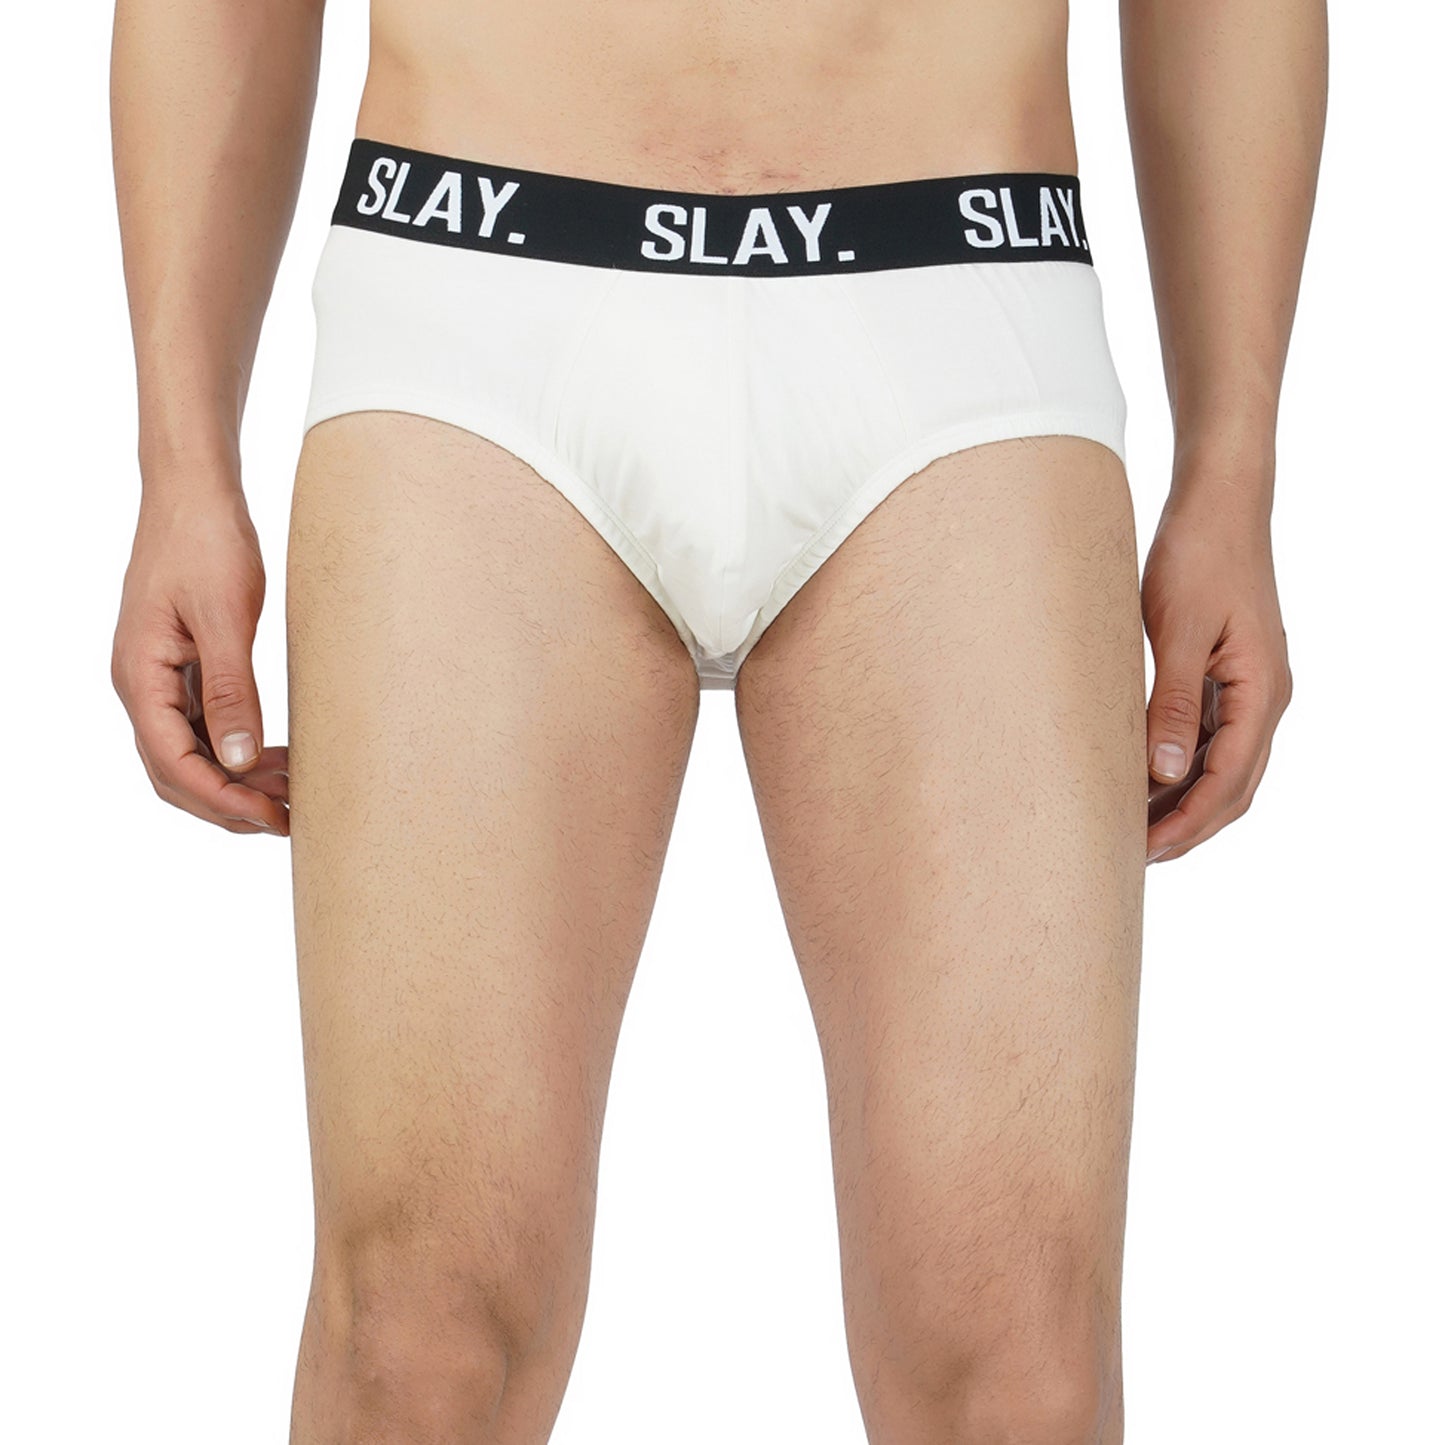 SLAY. Men's White Underwear Cotton Briefs